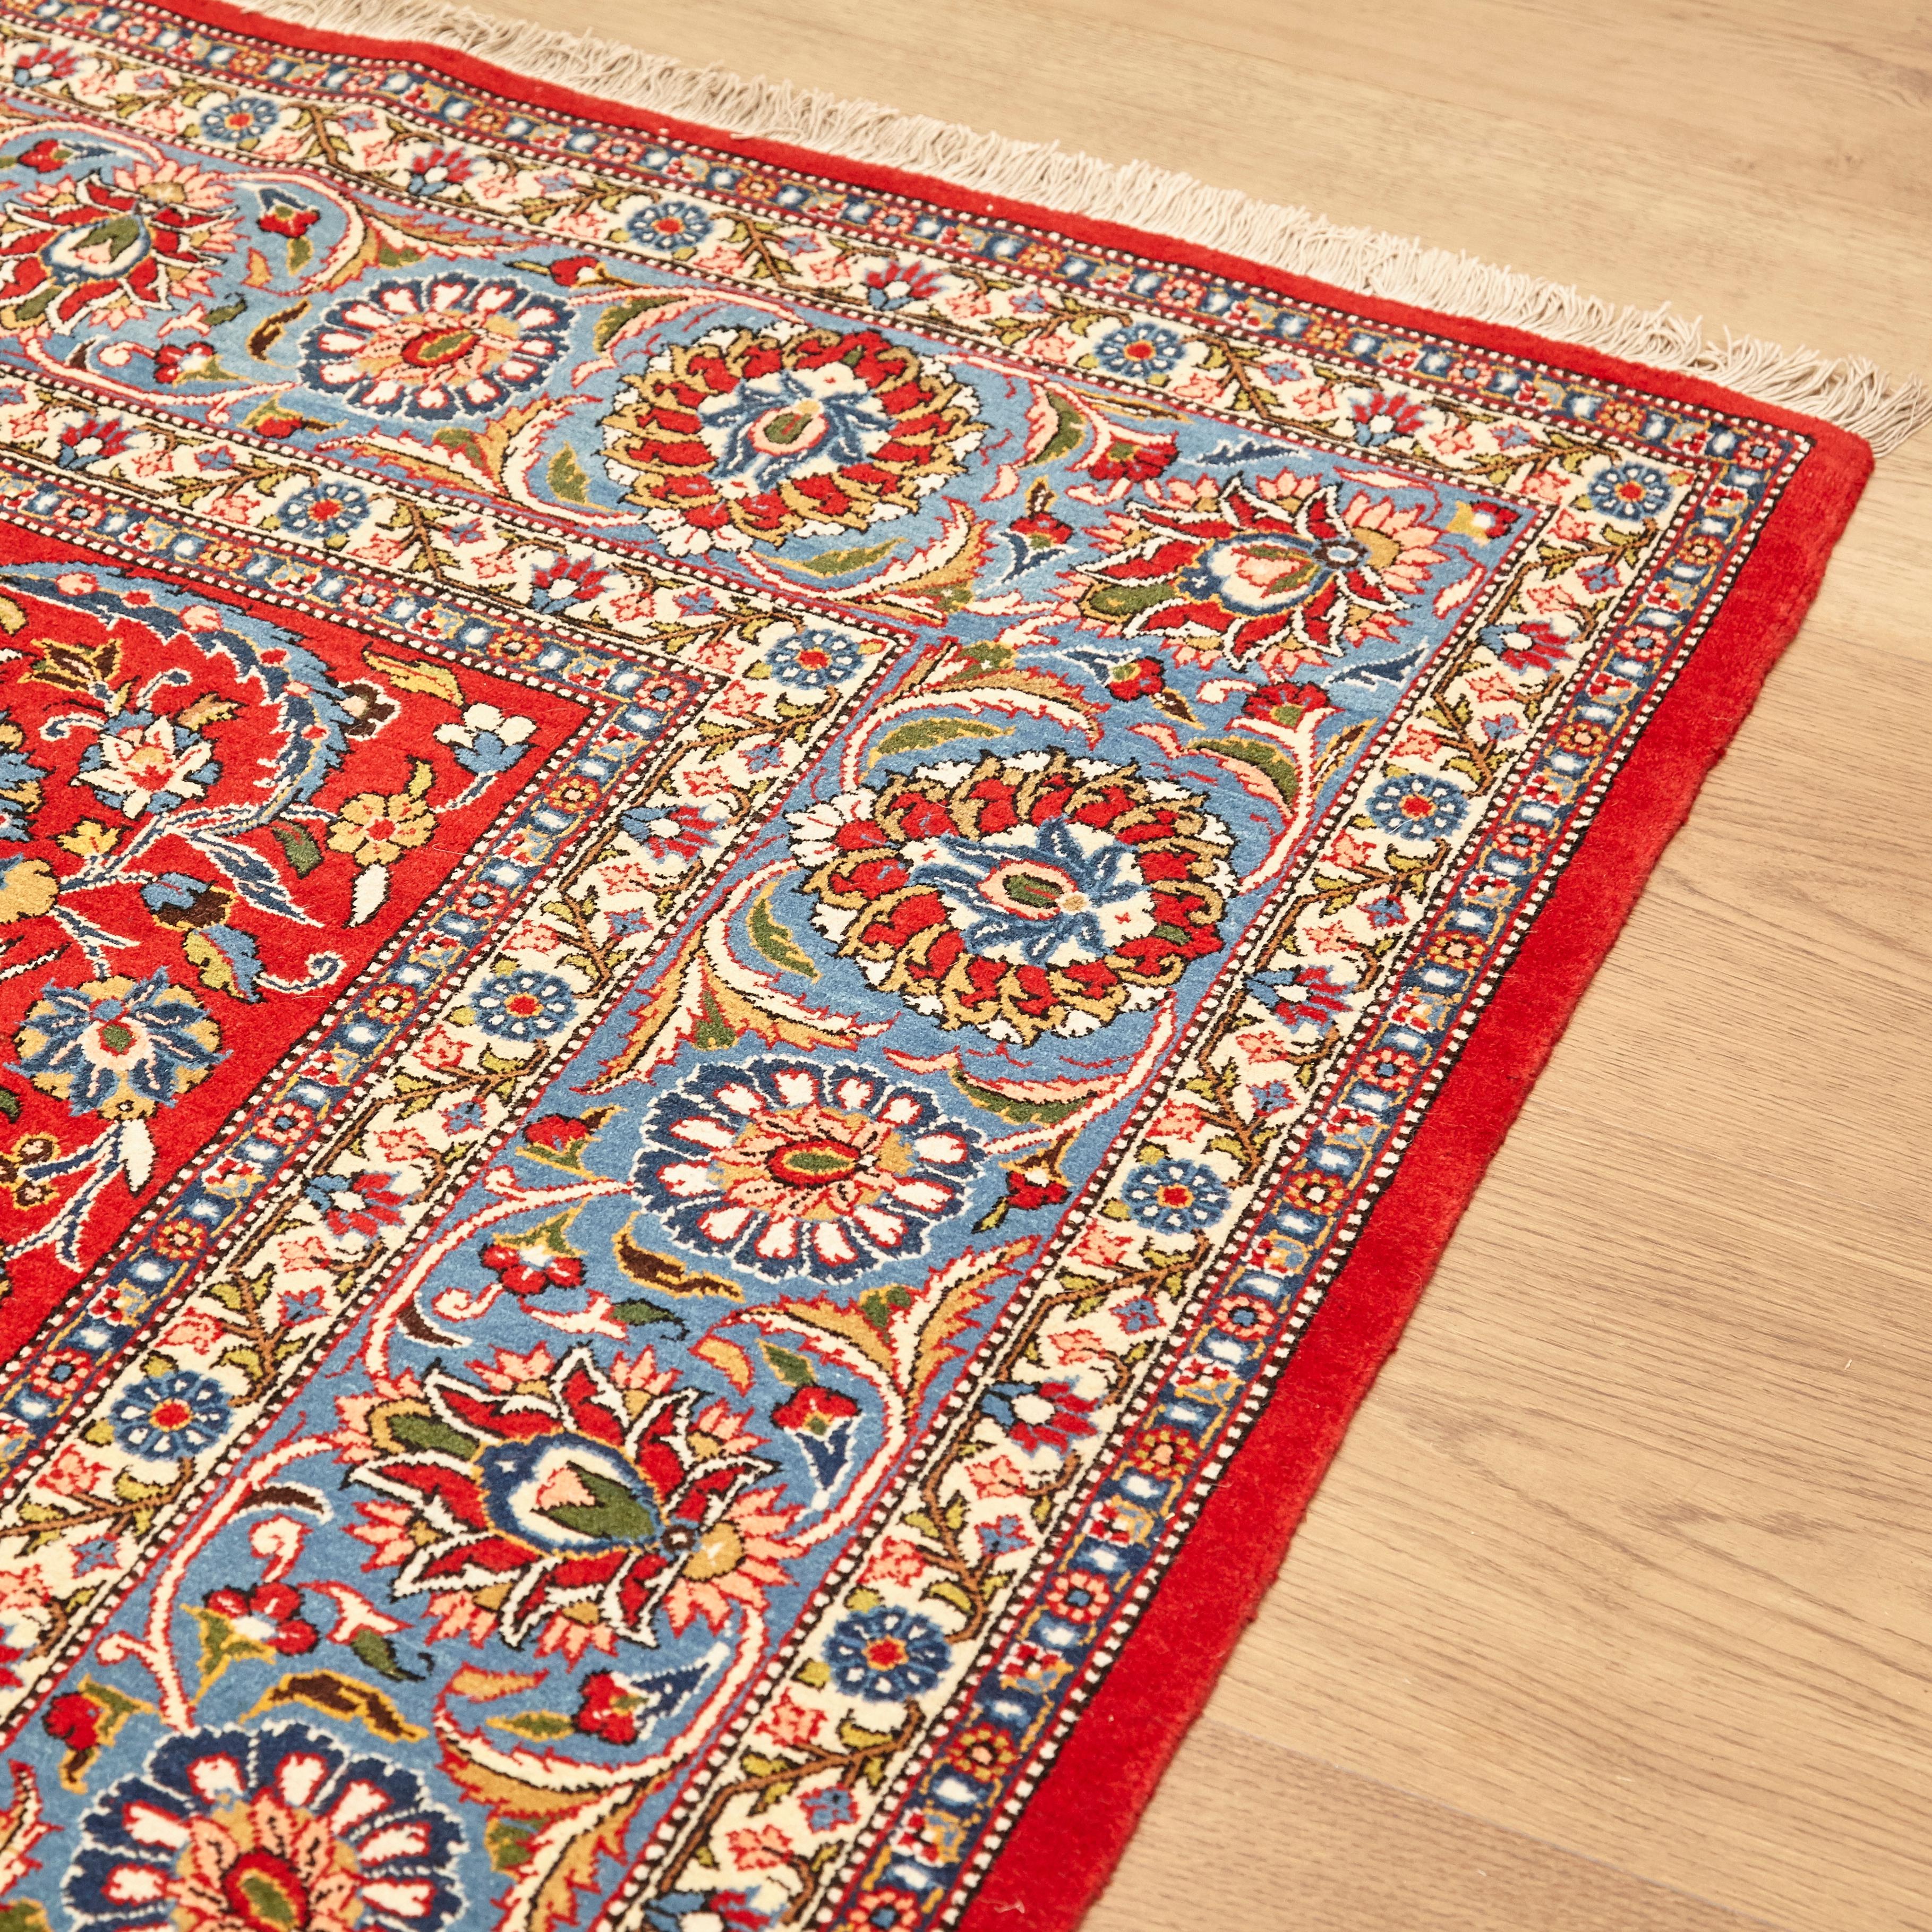 Ghom wool rug
Iran, 1950
Measures: 282 x 396 cm.